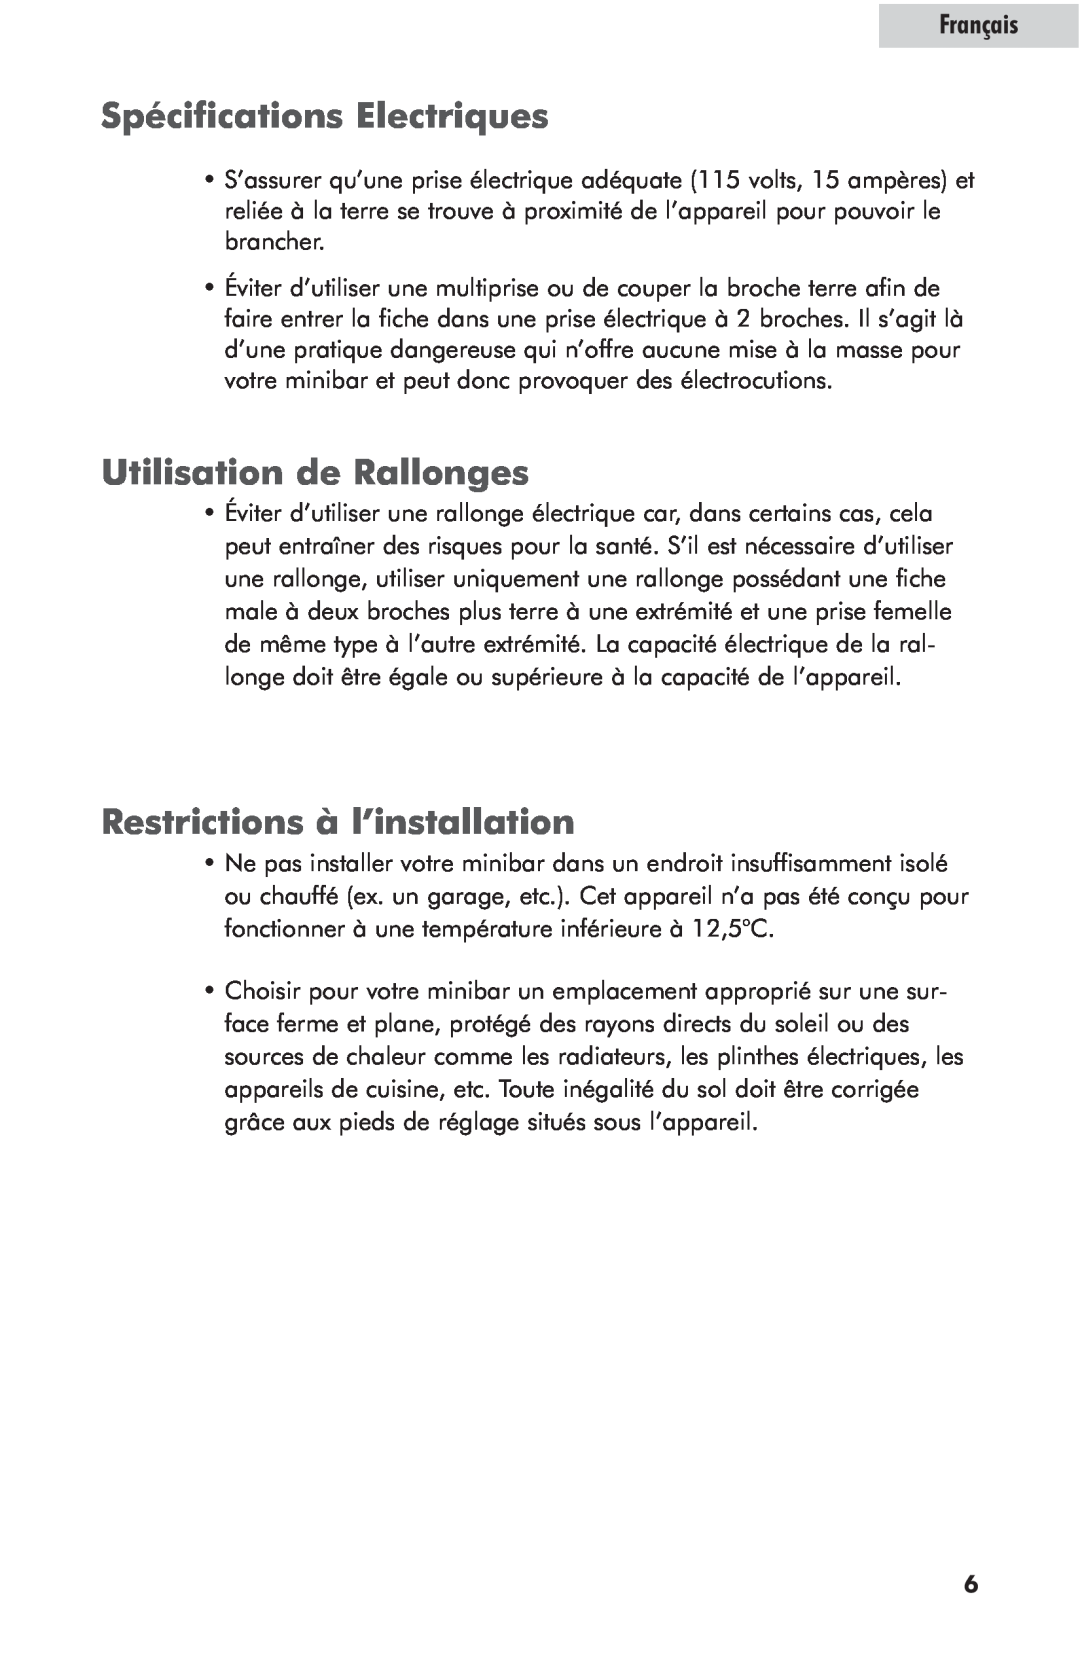 Haier hc125fvs user manual Spécifications Electriques, Utilisation de Rallonges, Restrictions à l’installation, Français 